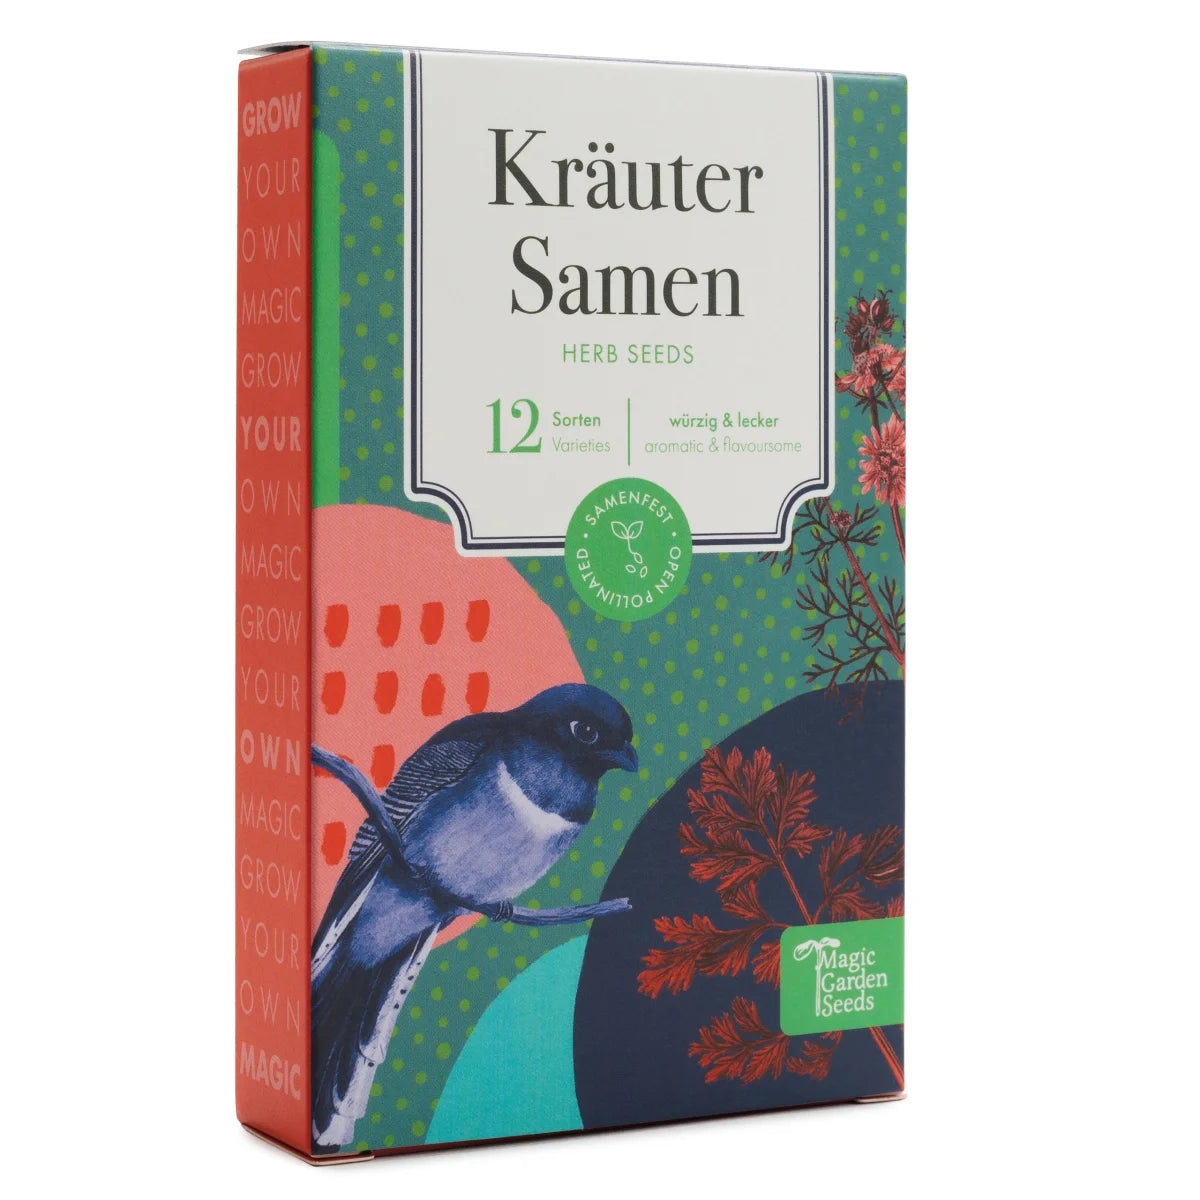 SALE Kräutersamen - 12 samenfeste würzige & leckere Kräutersorten